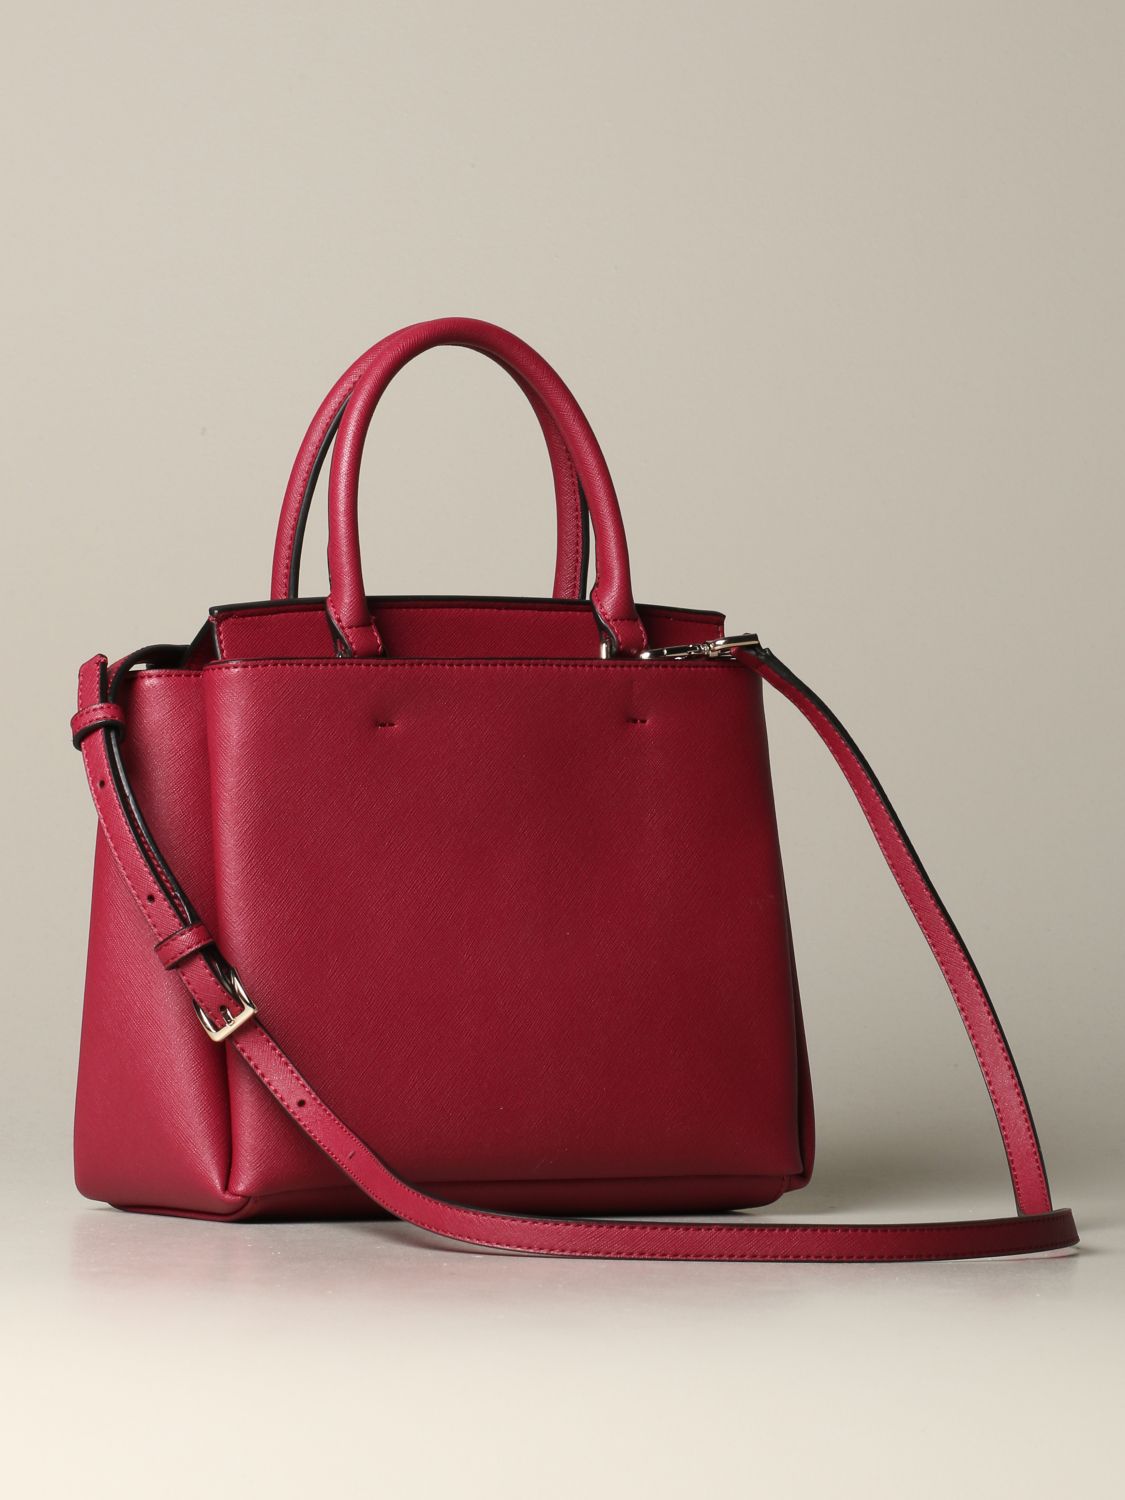 Red Calvin Klein Shoulder Bag With Dust Bag | eBay